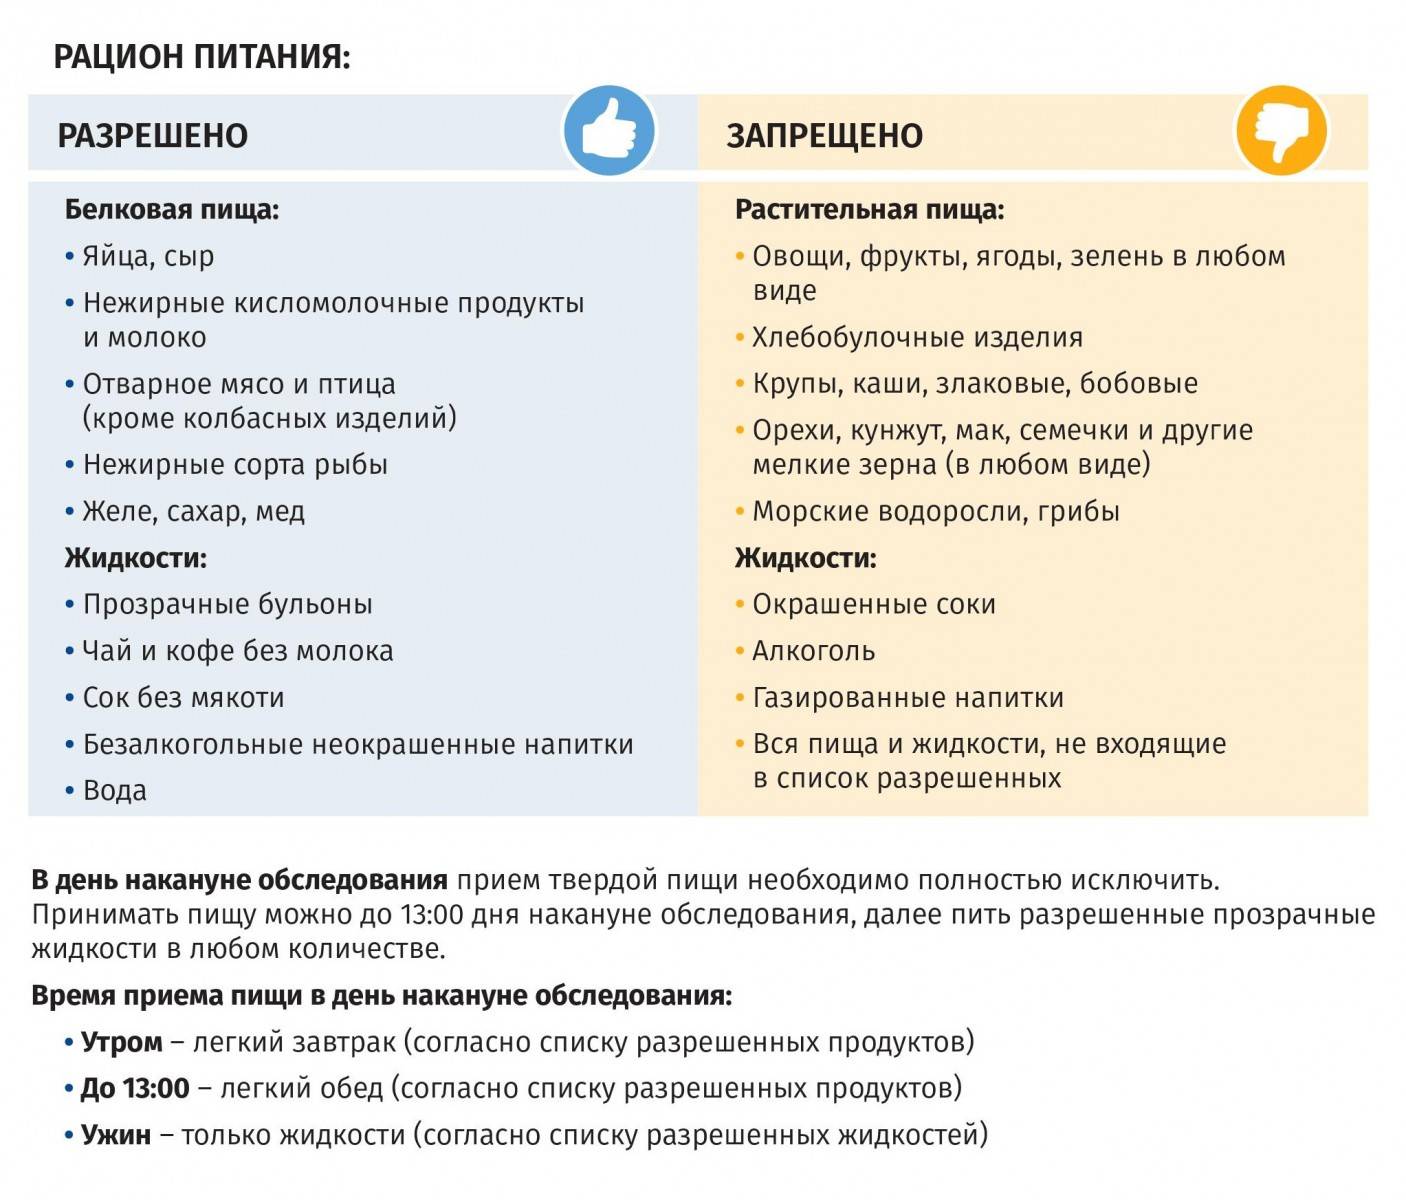 Бесшлаковая диета — показания и принцип питания, примерное меню — med-anketa.ru